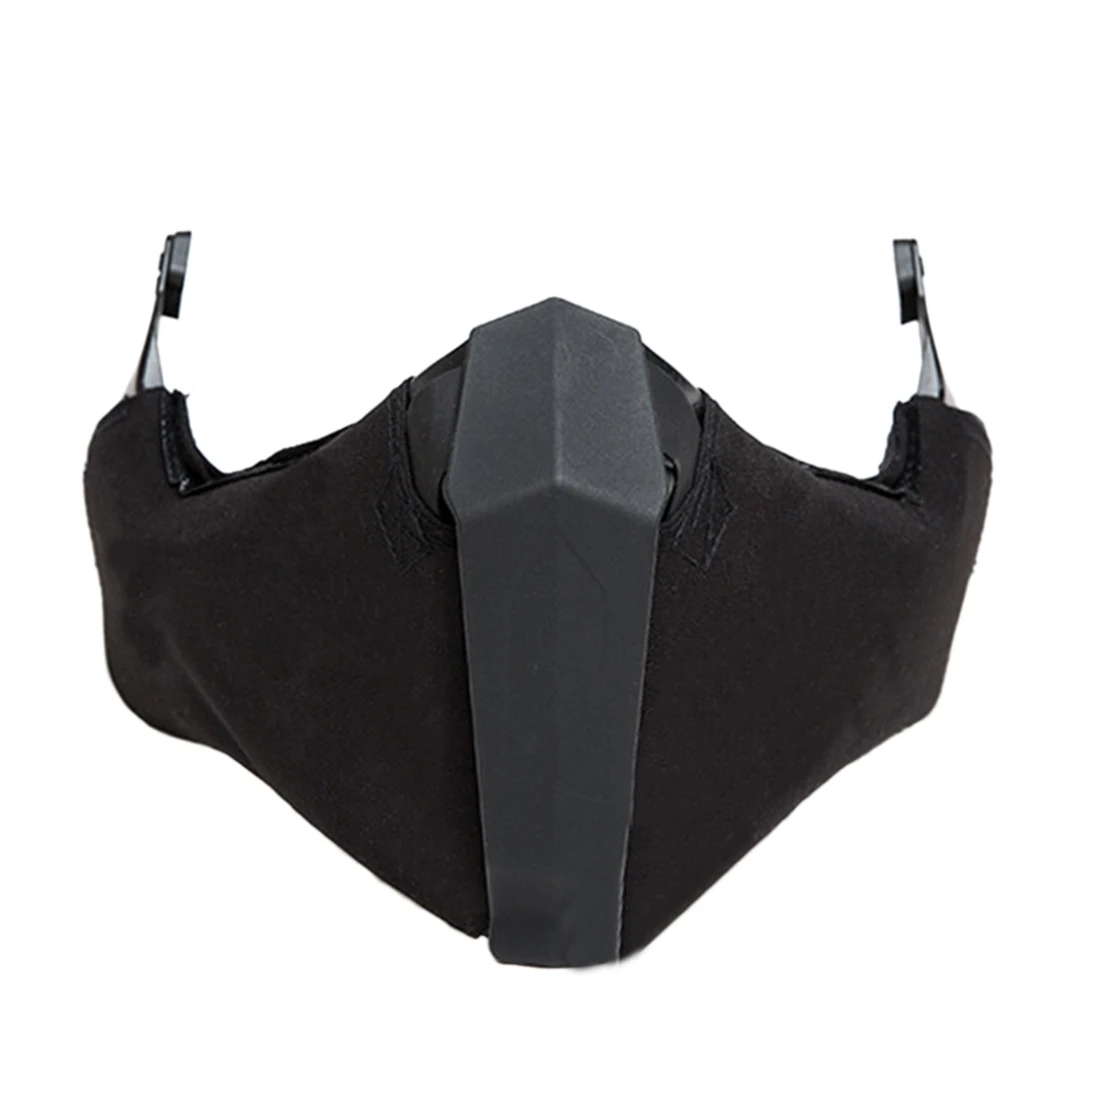 FMA внешний деятельность Airsoft дышащие Mandible Половина маска для лица для шлем-черный